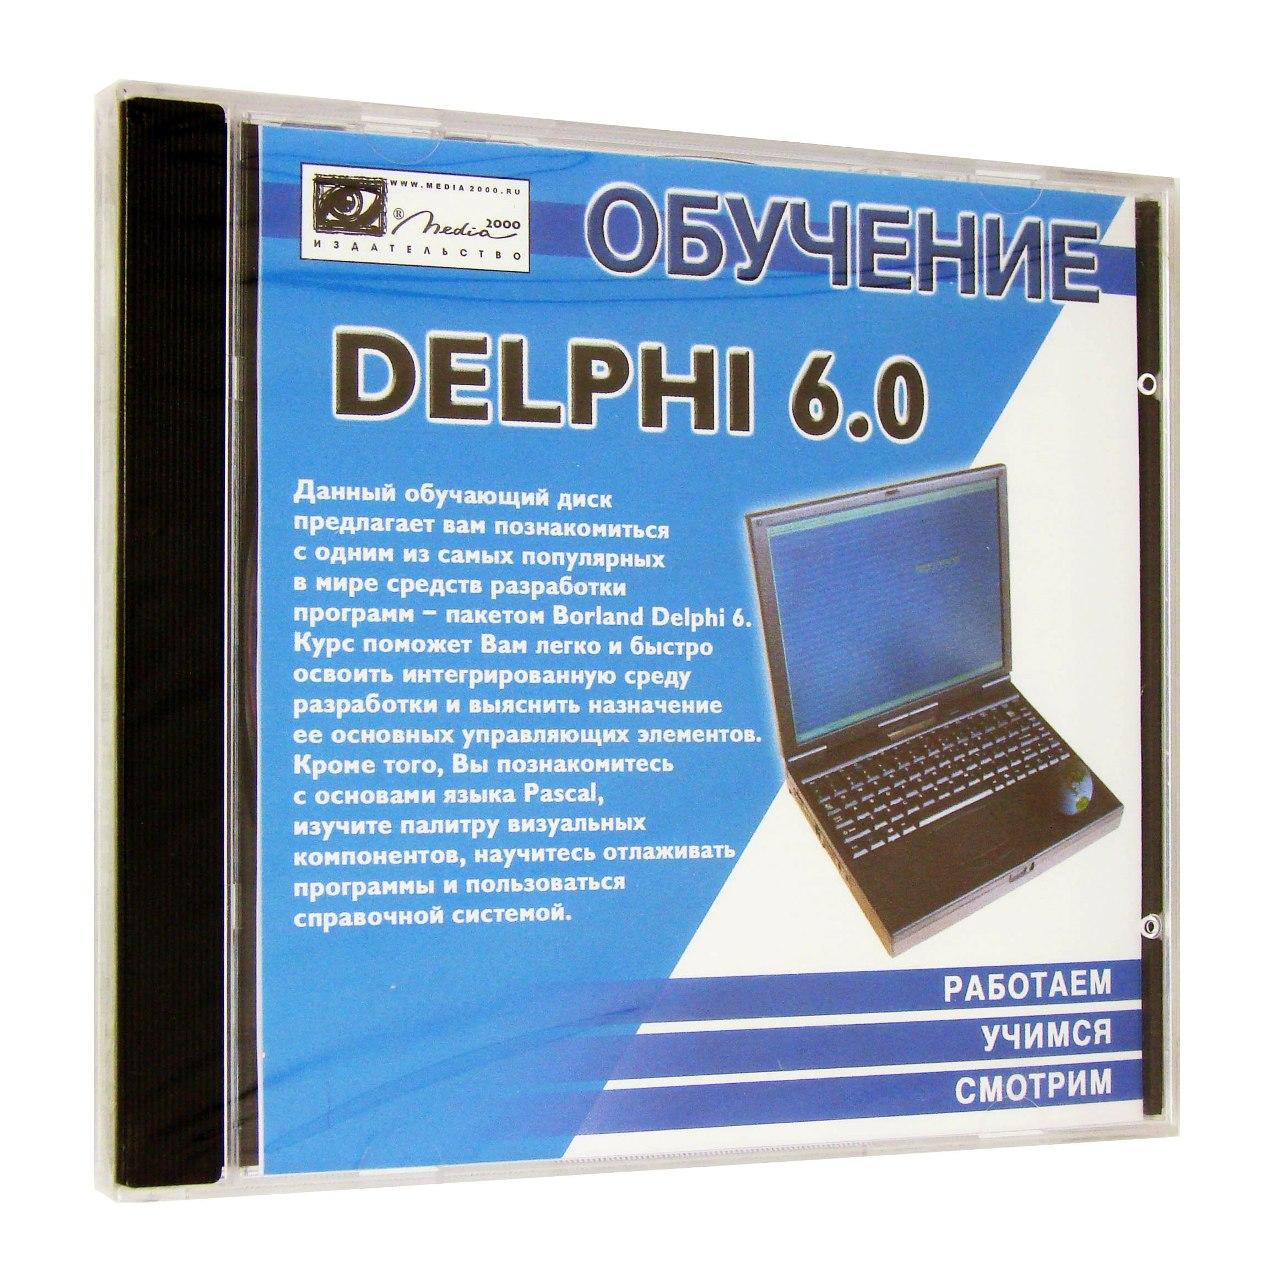 Компьютерный компакт-диск Обучение Borland Delphi 6.0 (PC), фирма "Медиа 2000", 1CD